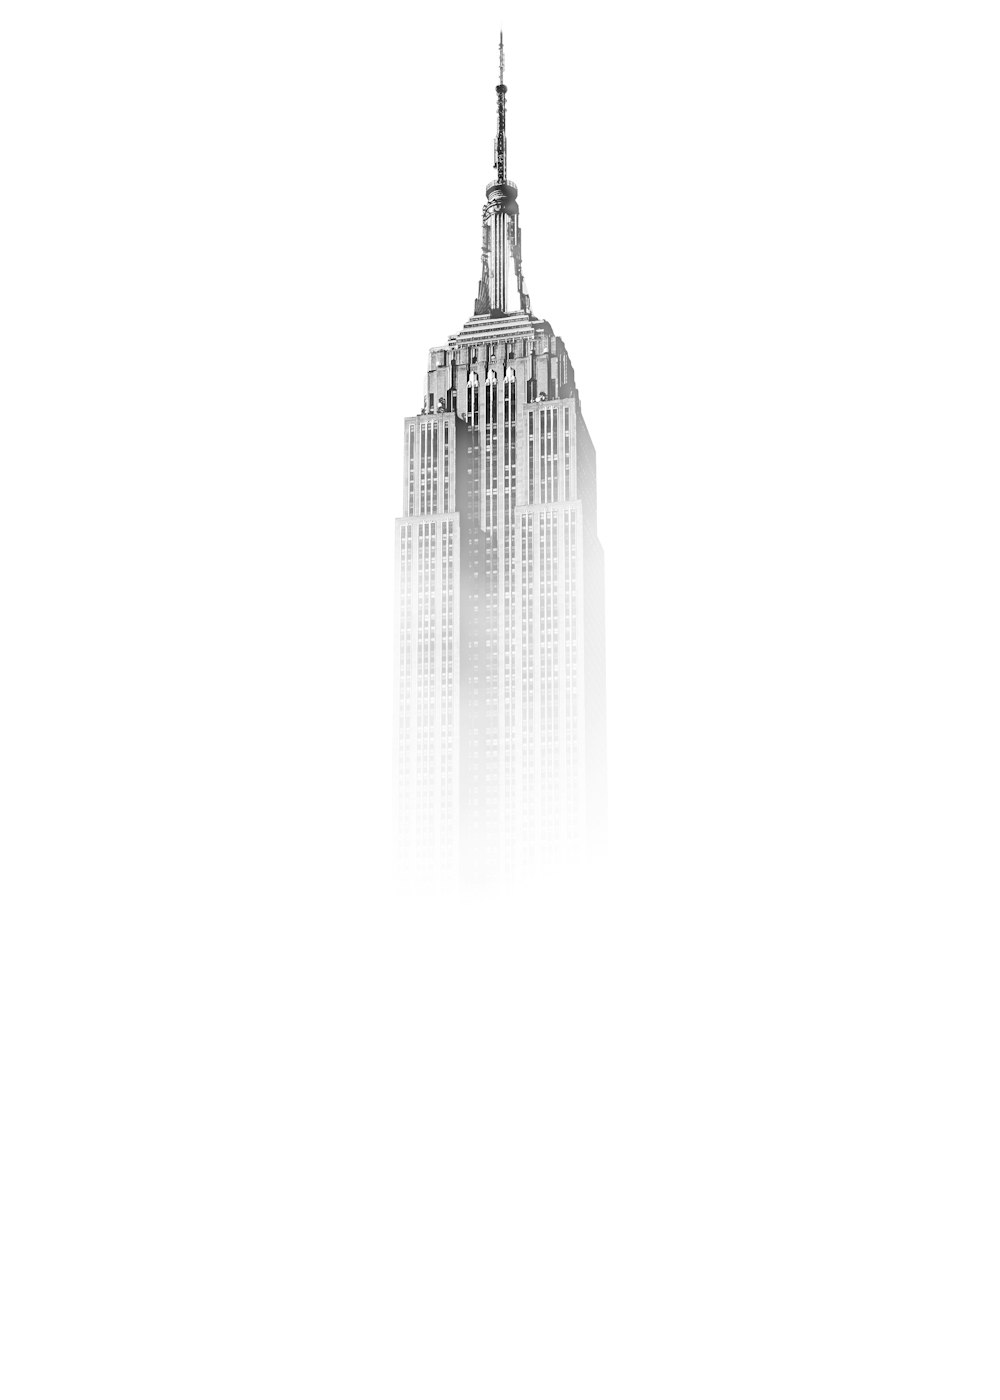 Croquis de l’Empire State Building